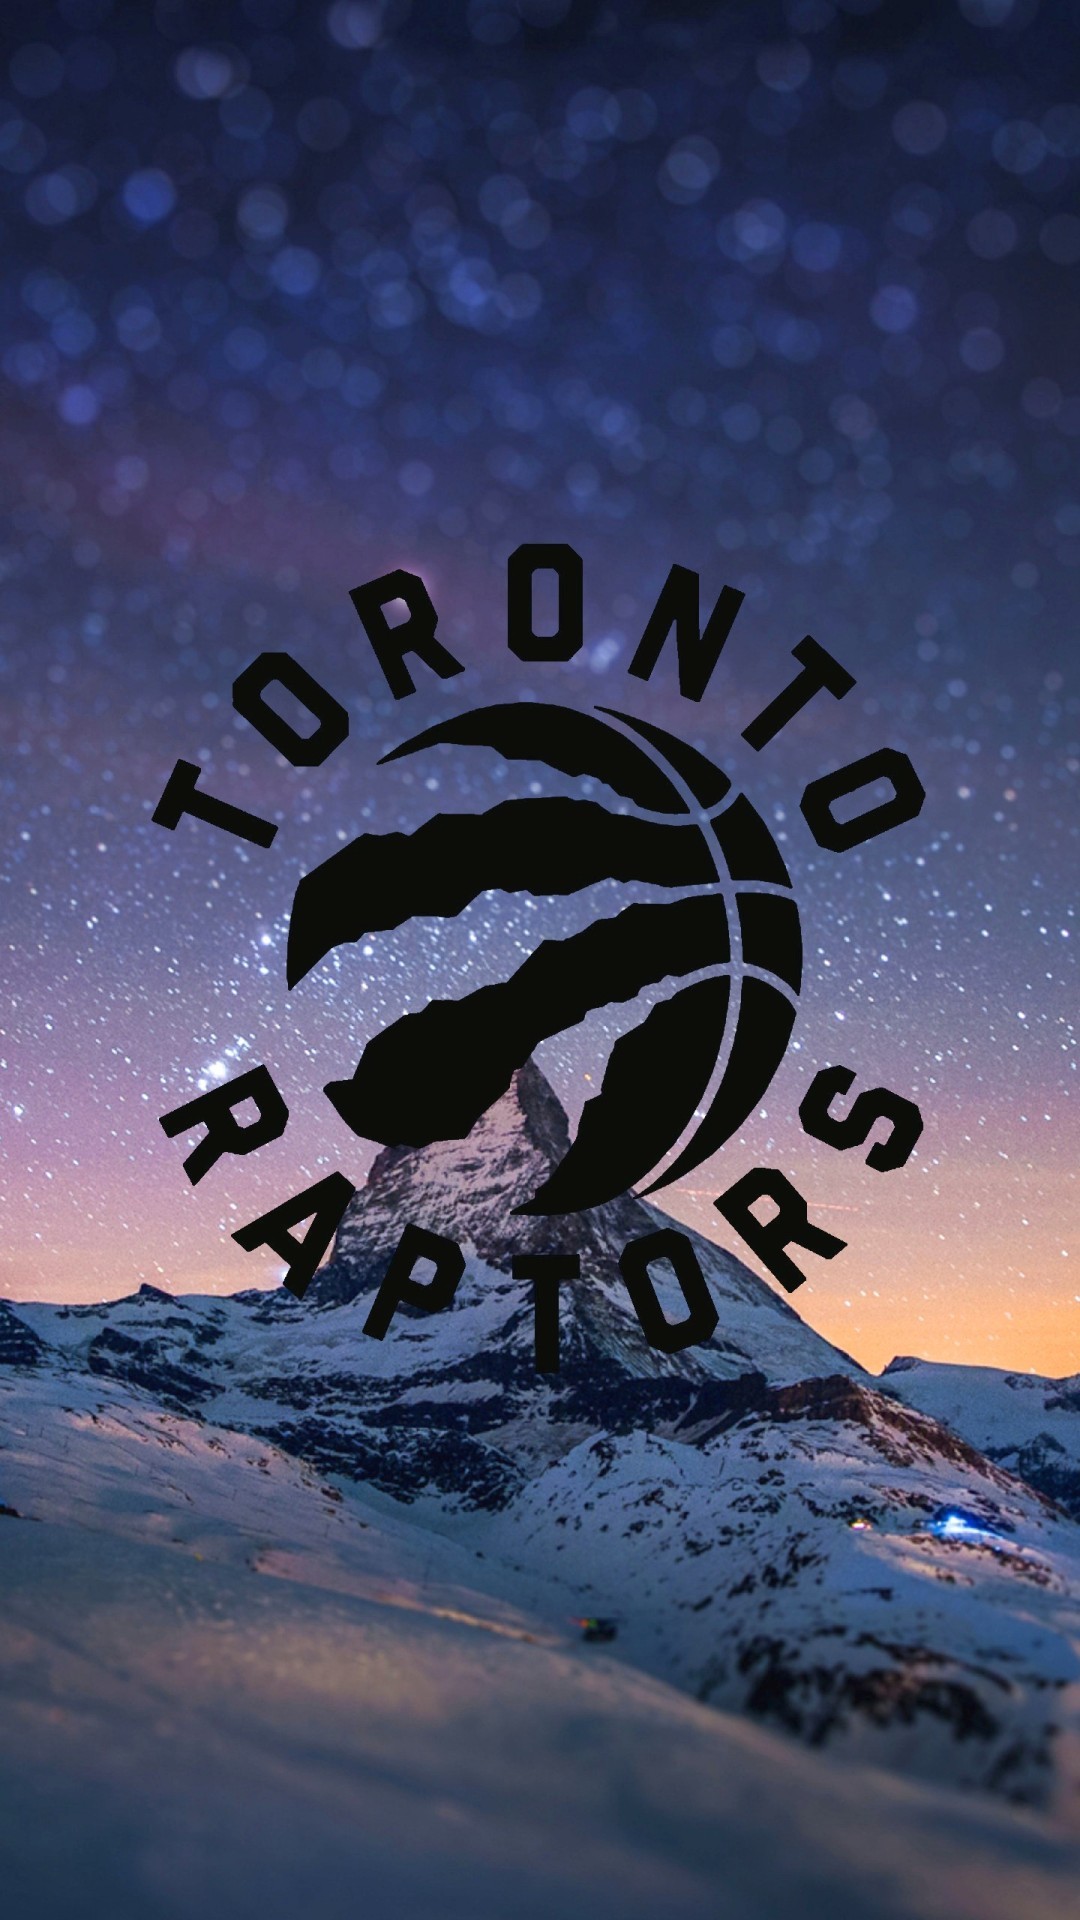 1080x1920 Toronto Raptors iPhone Wallpaper Images